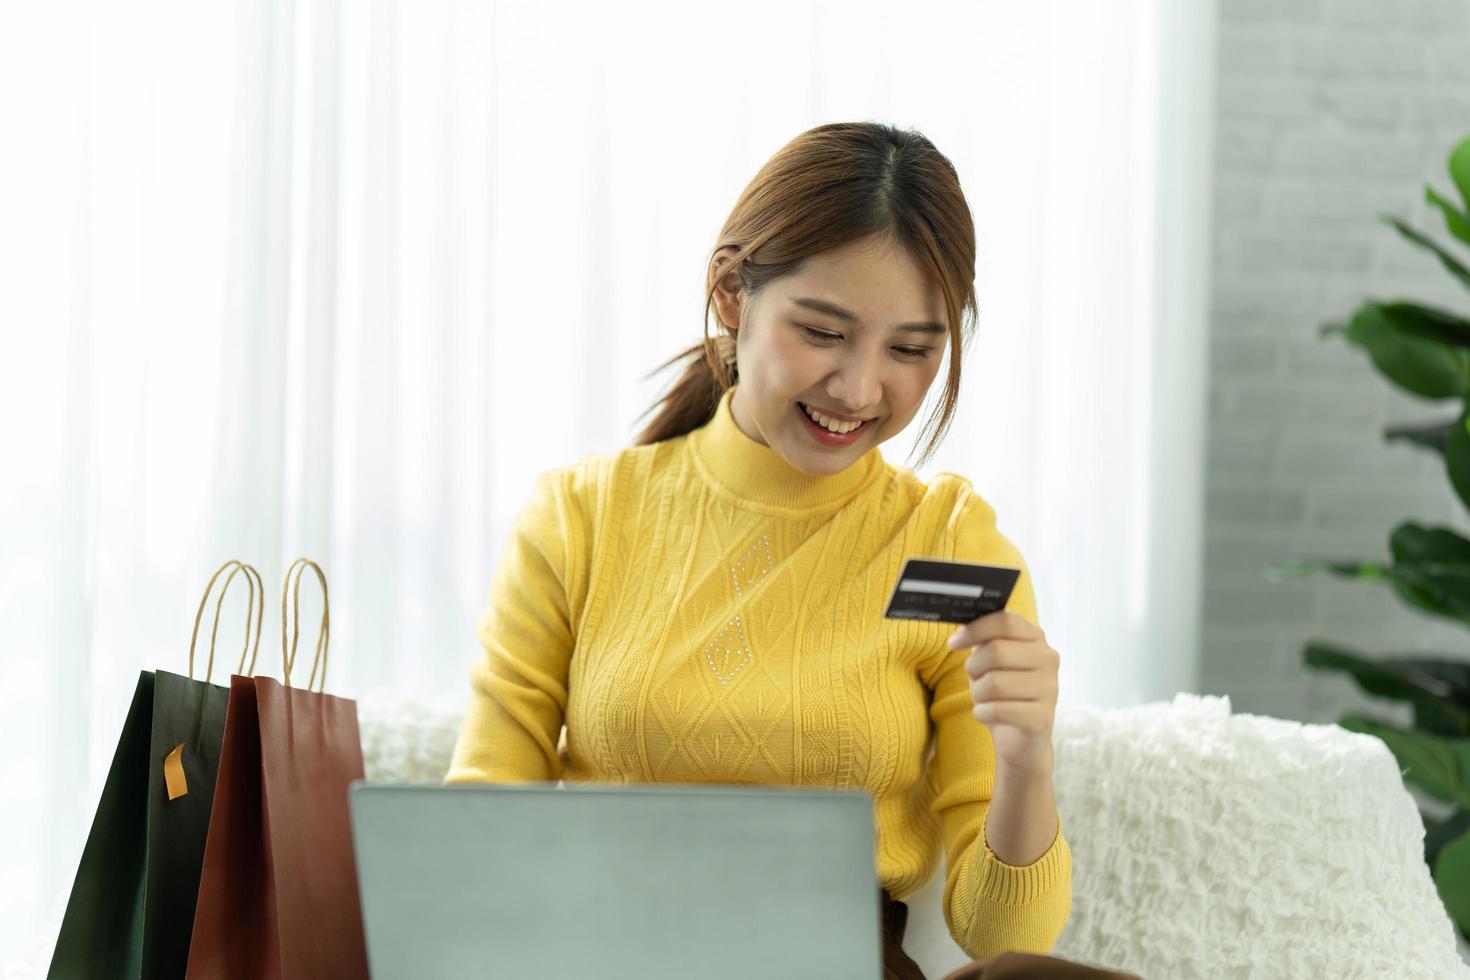 aziatische vrouw in vrijetijdskleding is blij en vrolijk terwijl ze communiceert met haar smartphone en in een coffeeshop werkt. foto